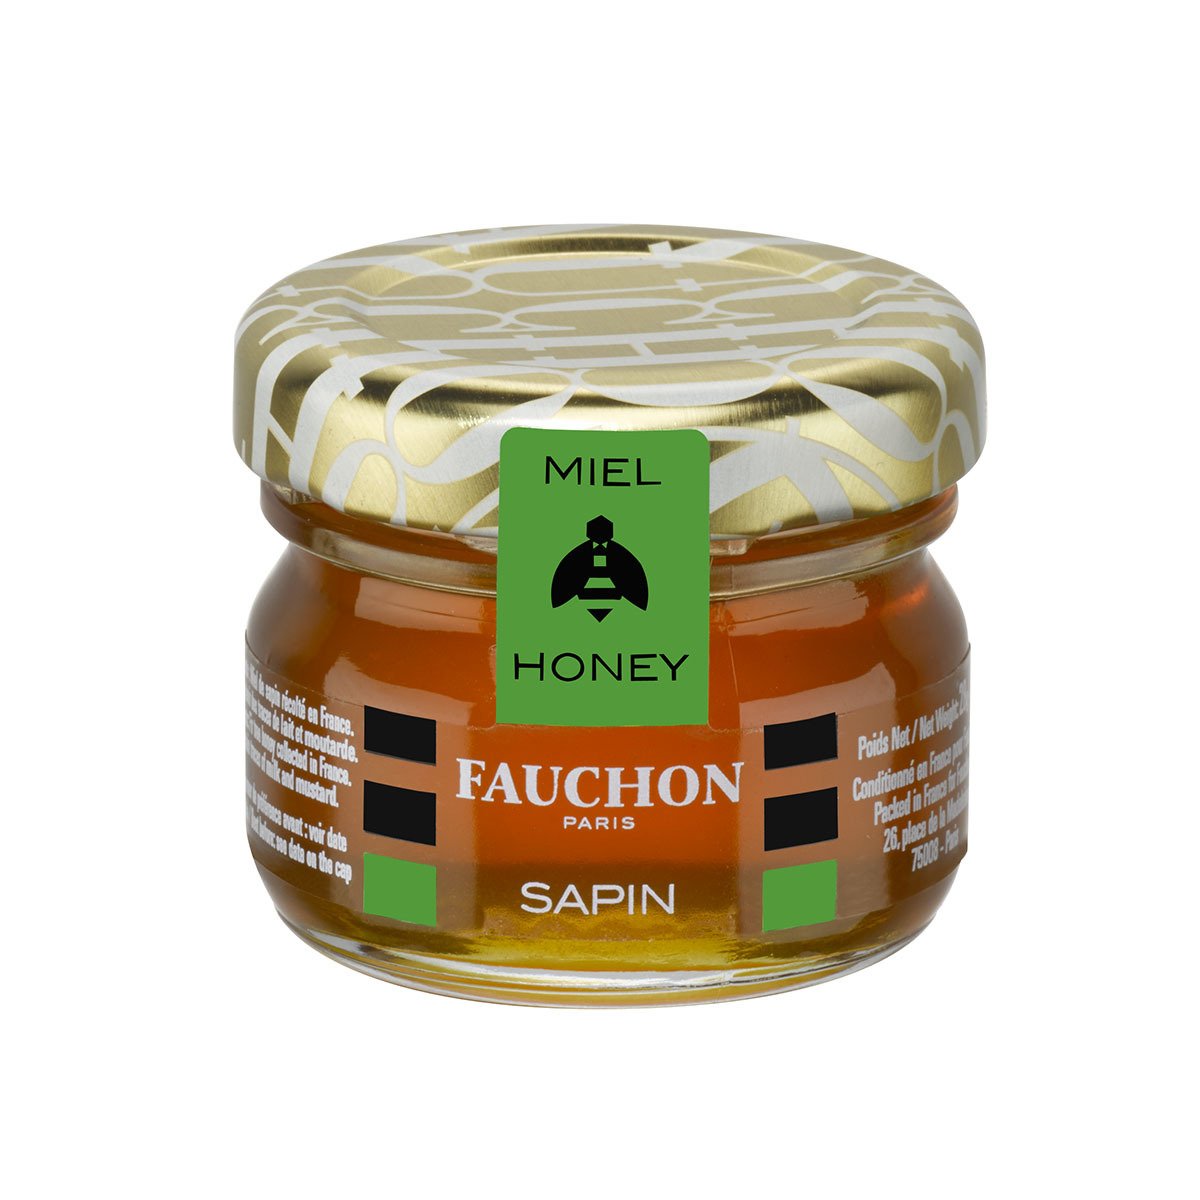 FAUCHON gourmet - Our selection - Delicatessen